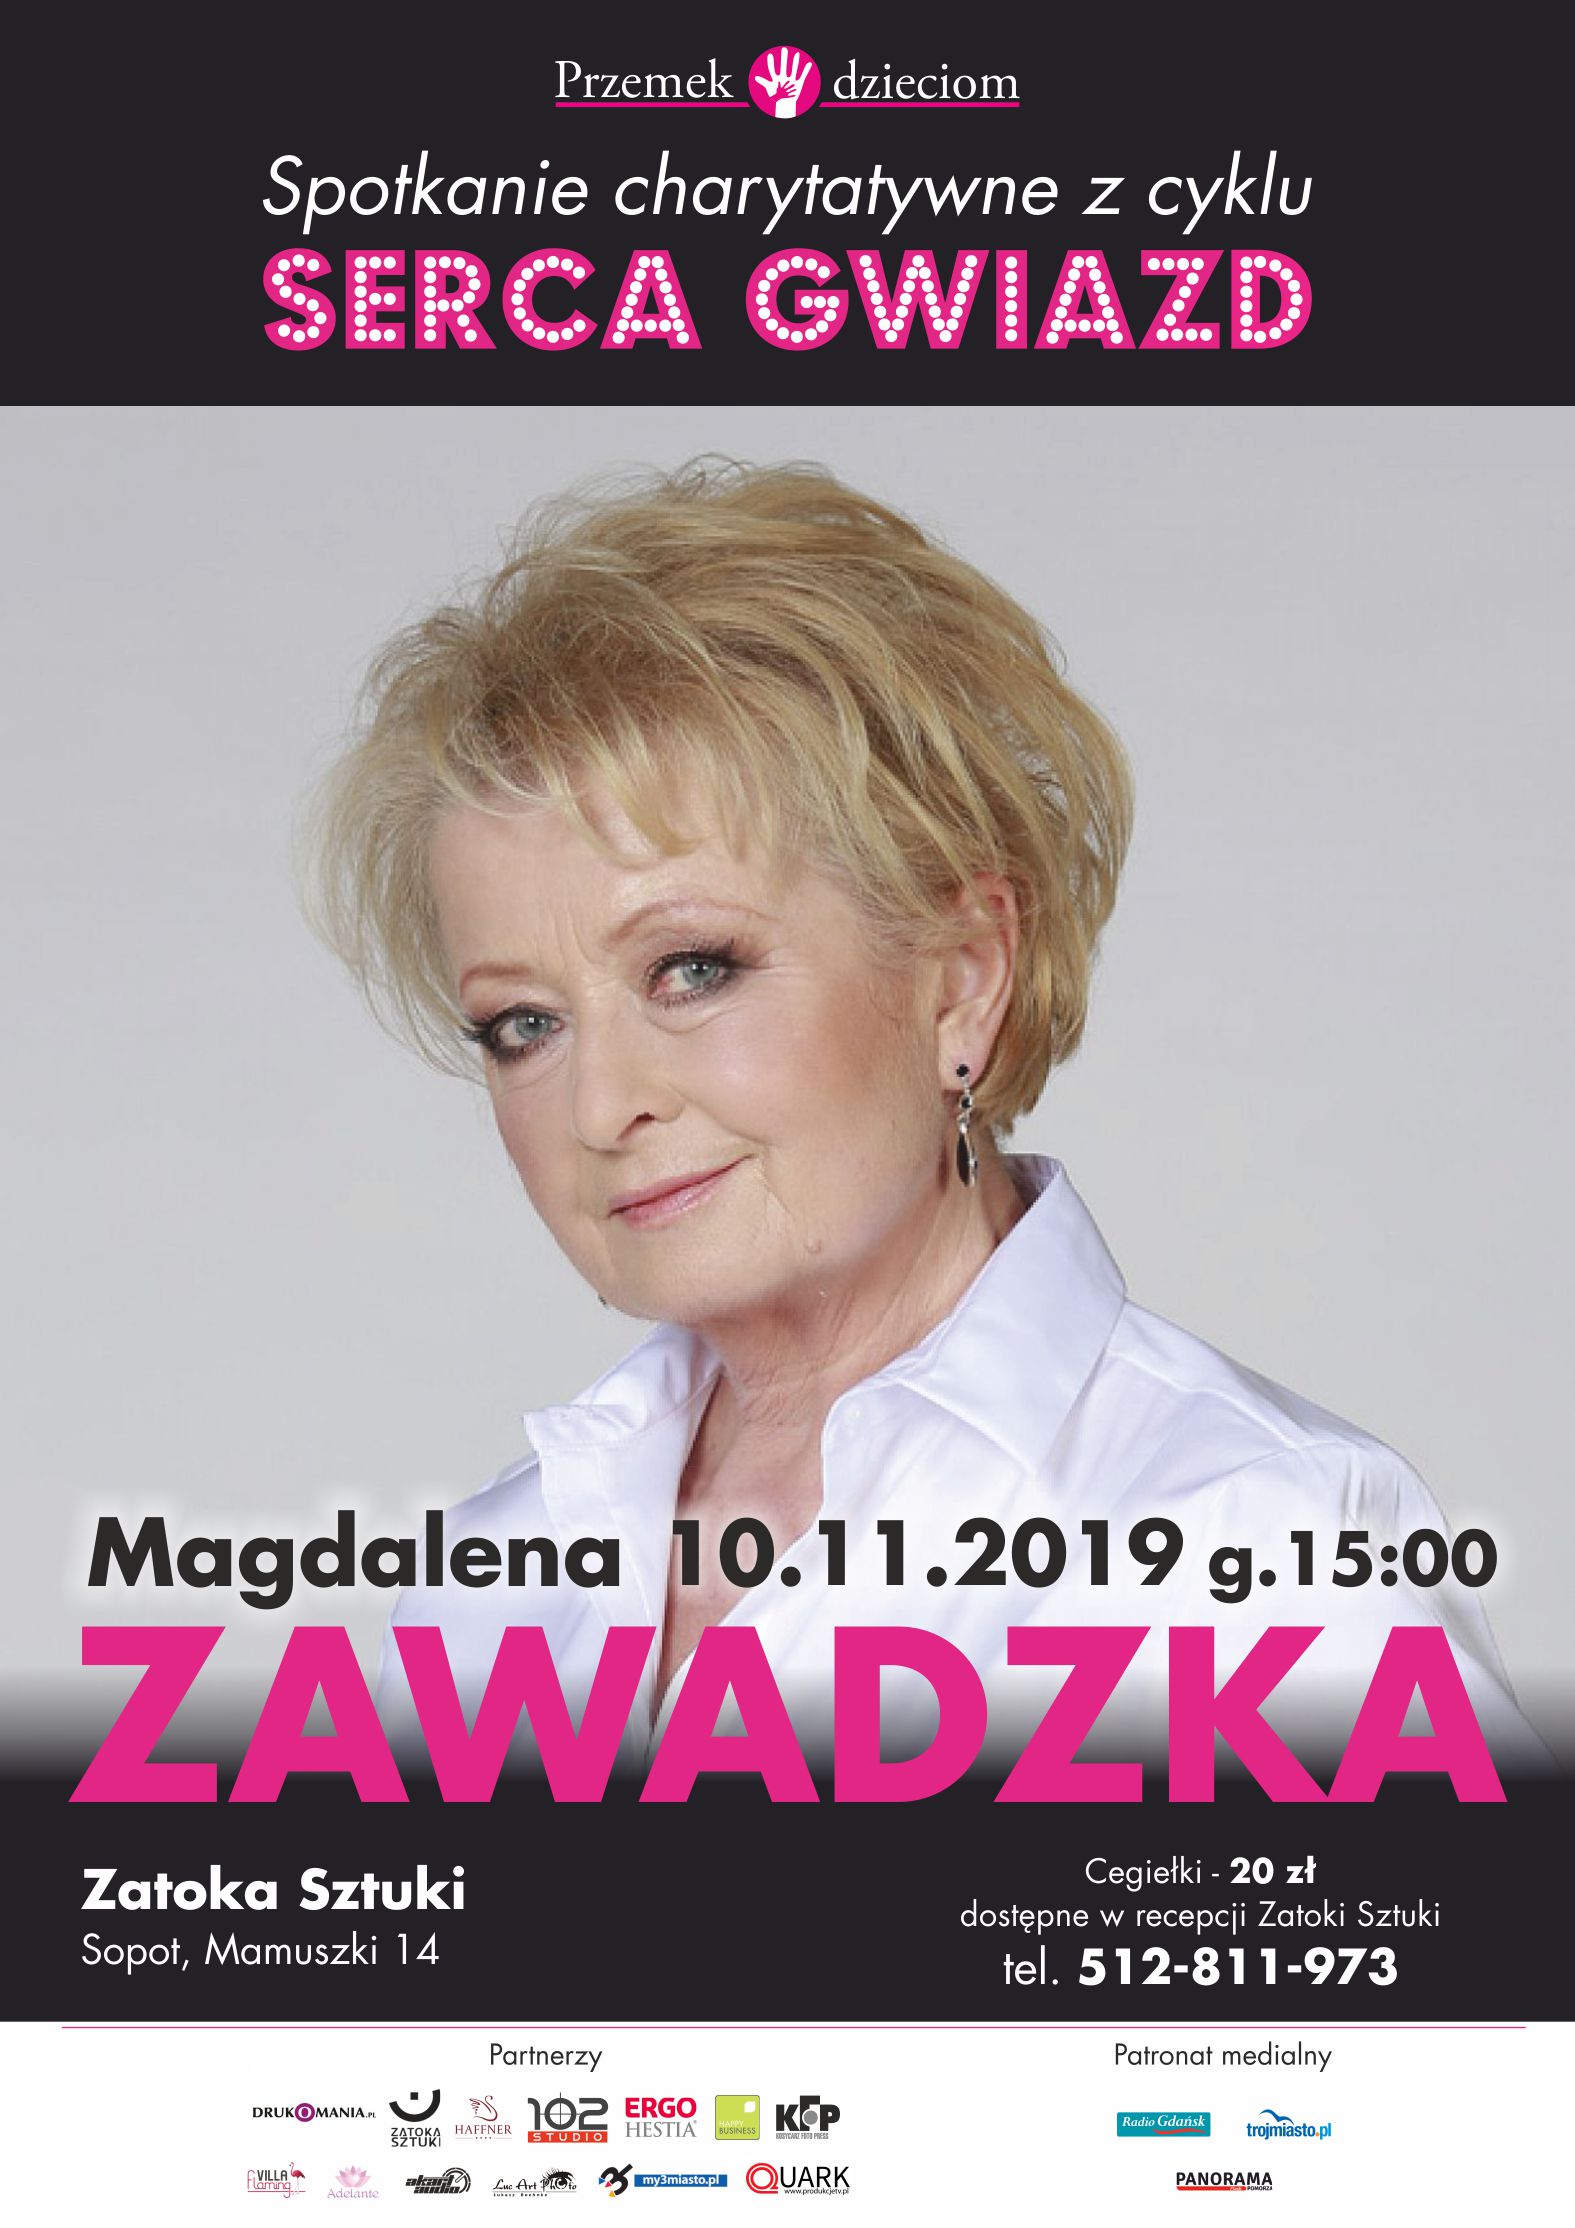 Magdalena Zawadzka w Sopocie - Serca Gwiazd